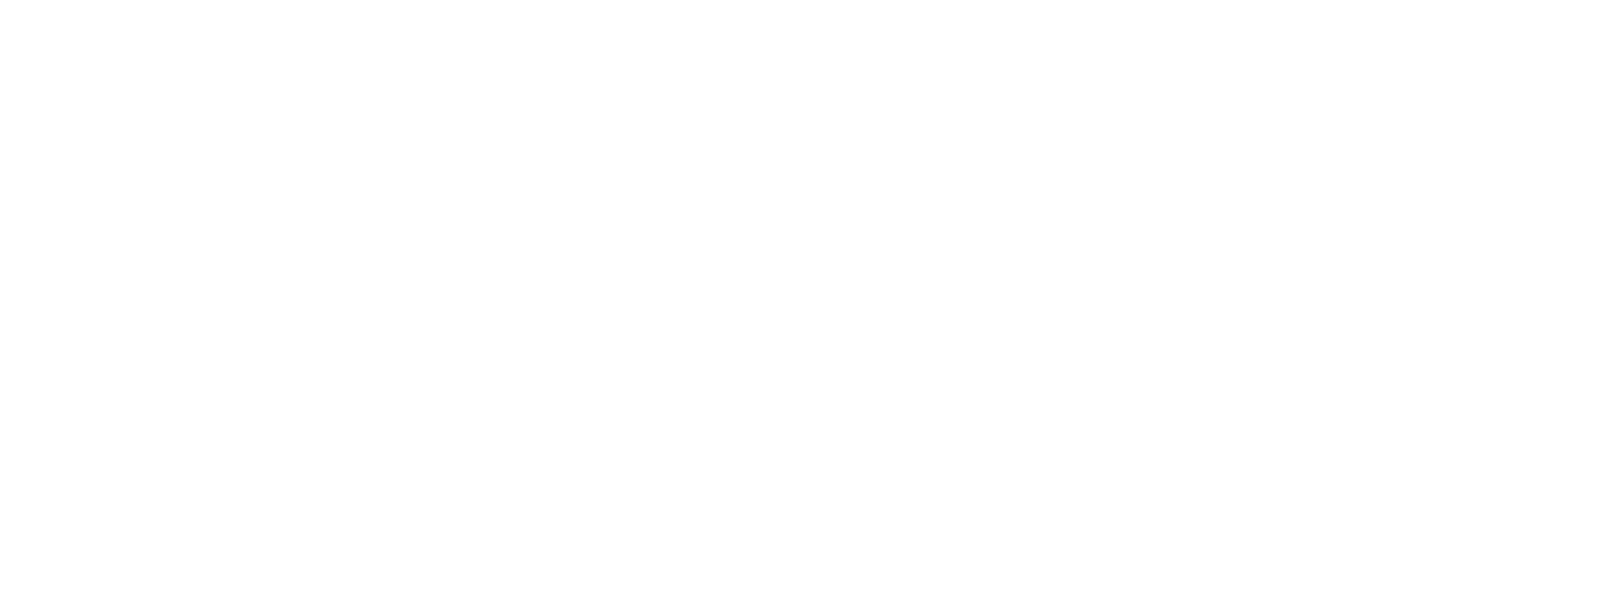 Stephens Cup